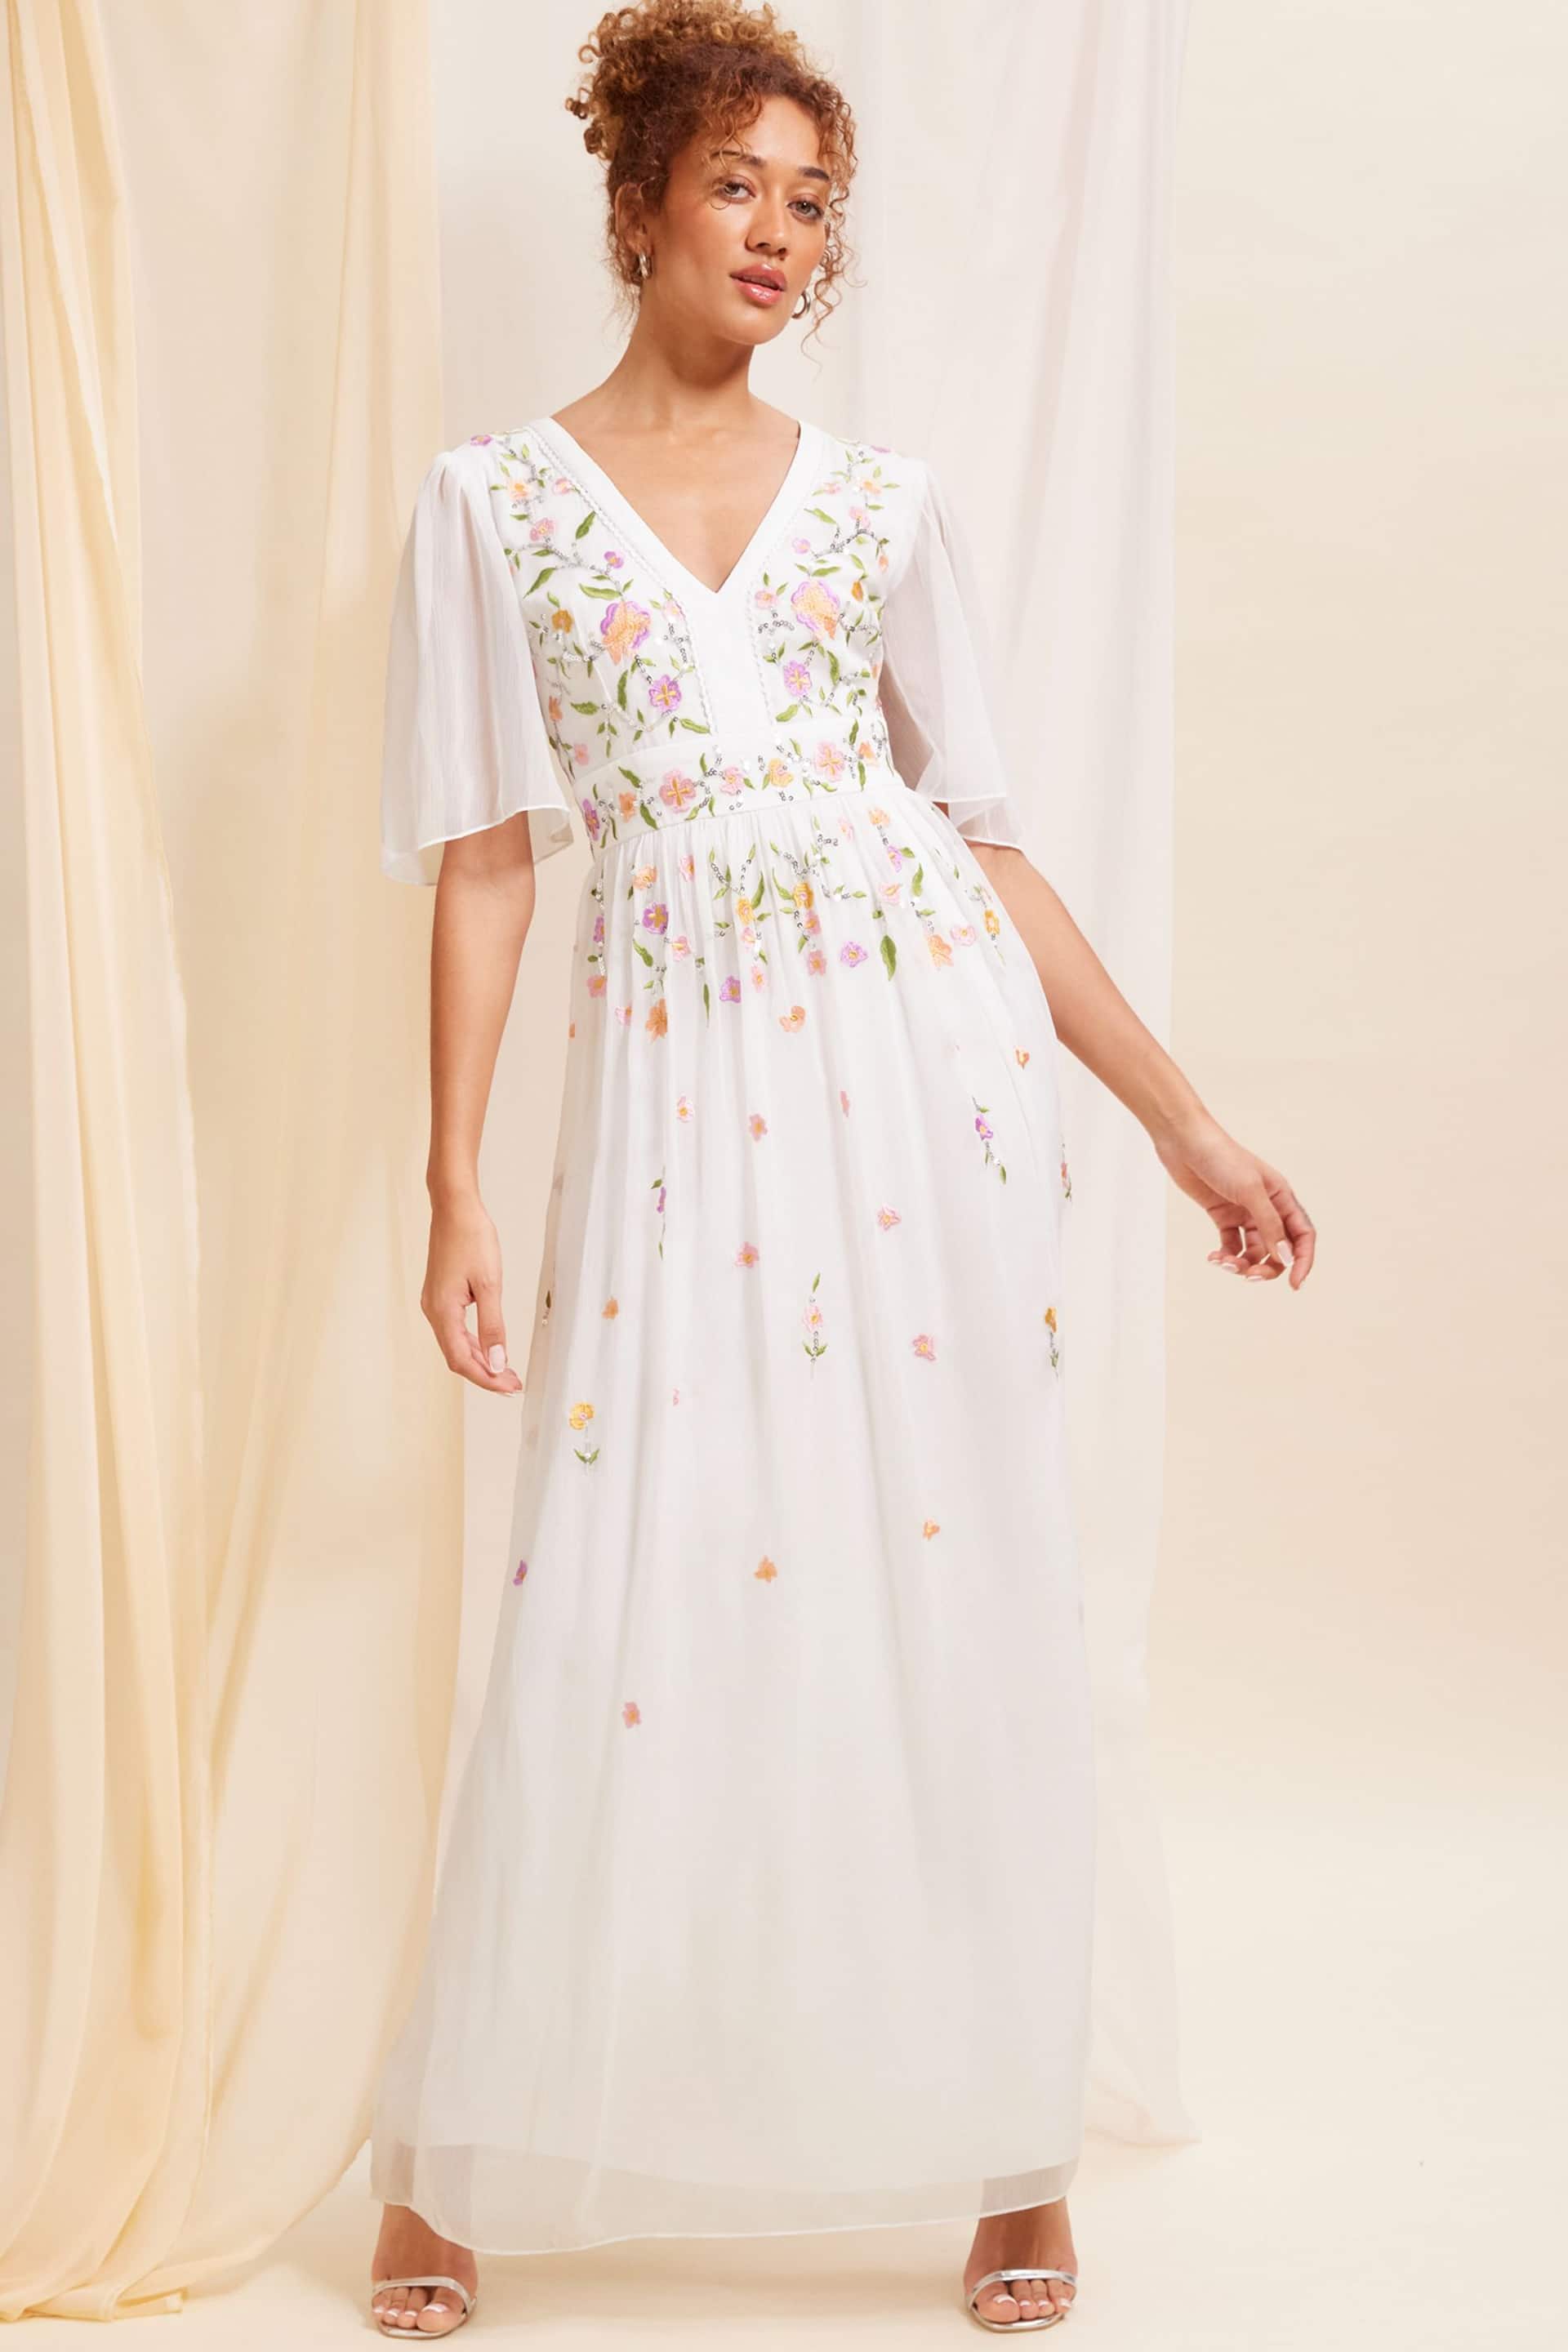 Love & Roses Ivory White Embellished Chiffon Flutter Sleeve Maxi Dress - Image 1 of 4